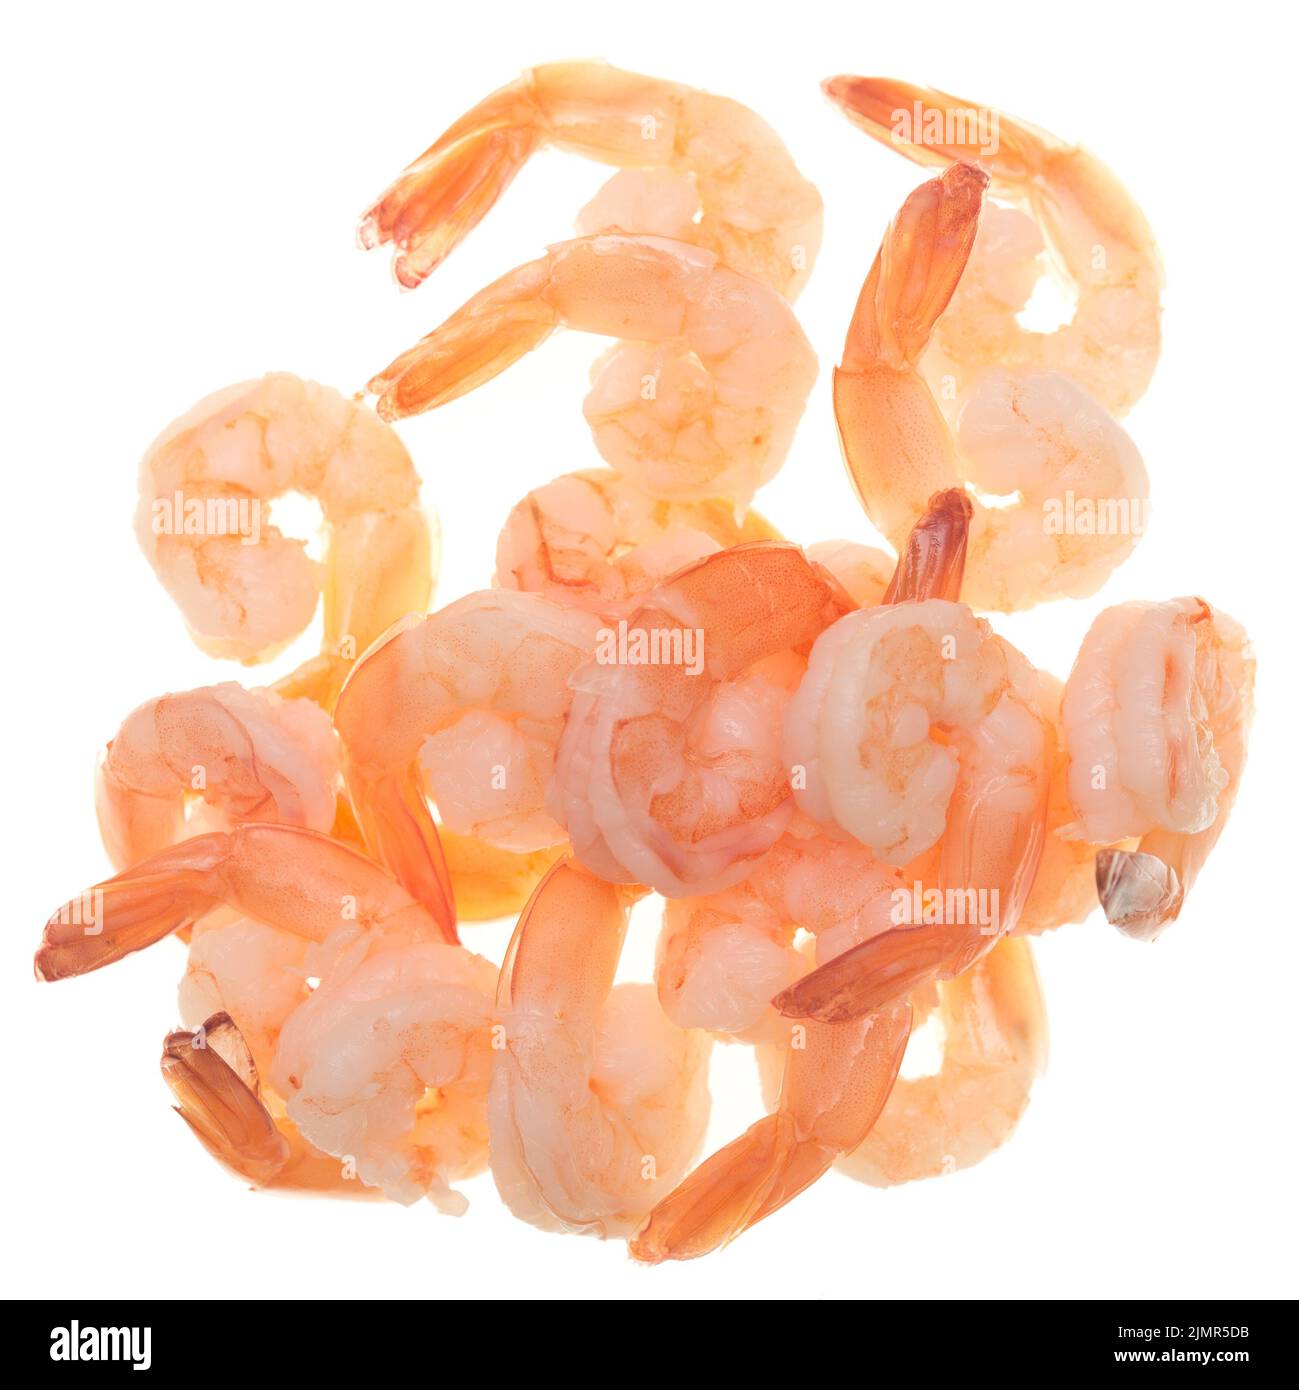 Shrimps on white Stock Photo